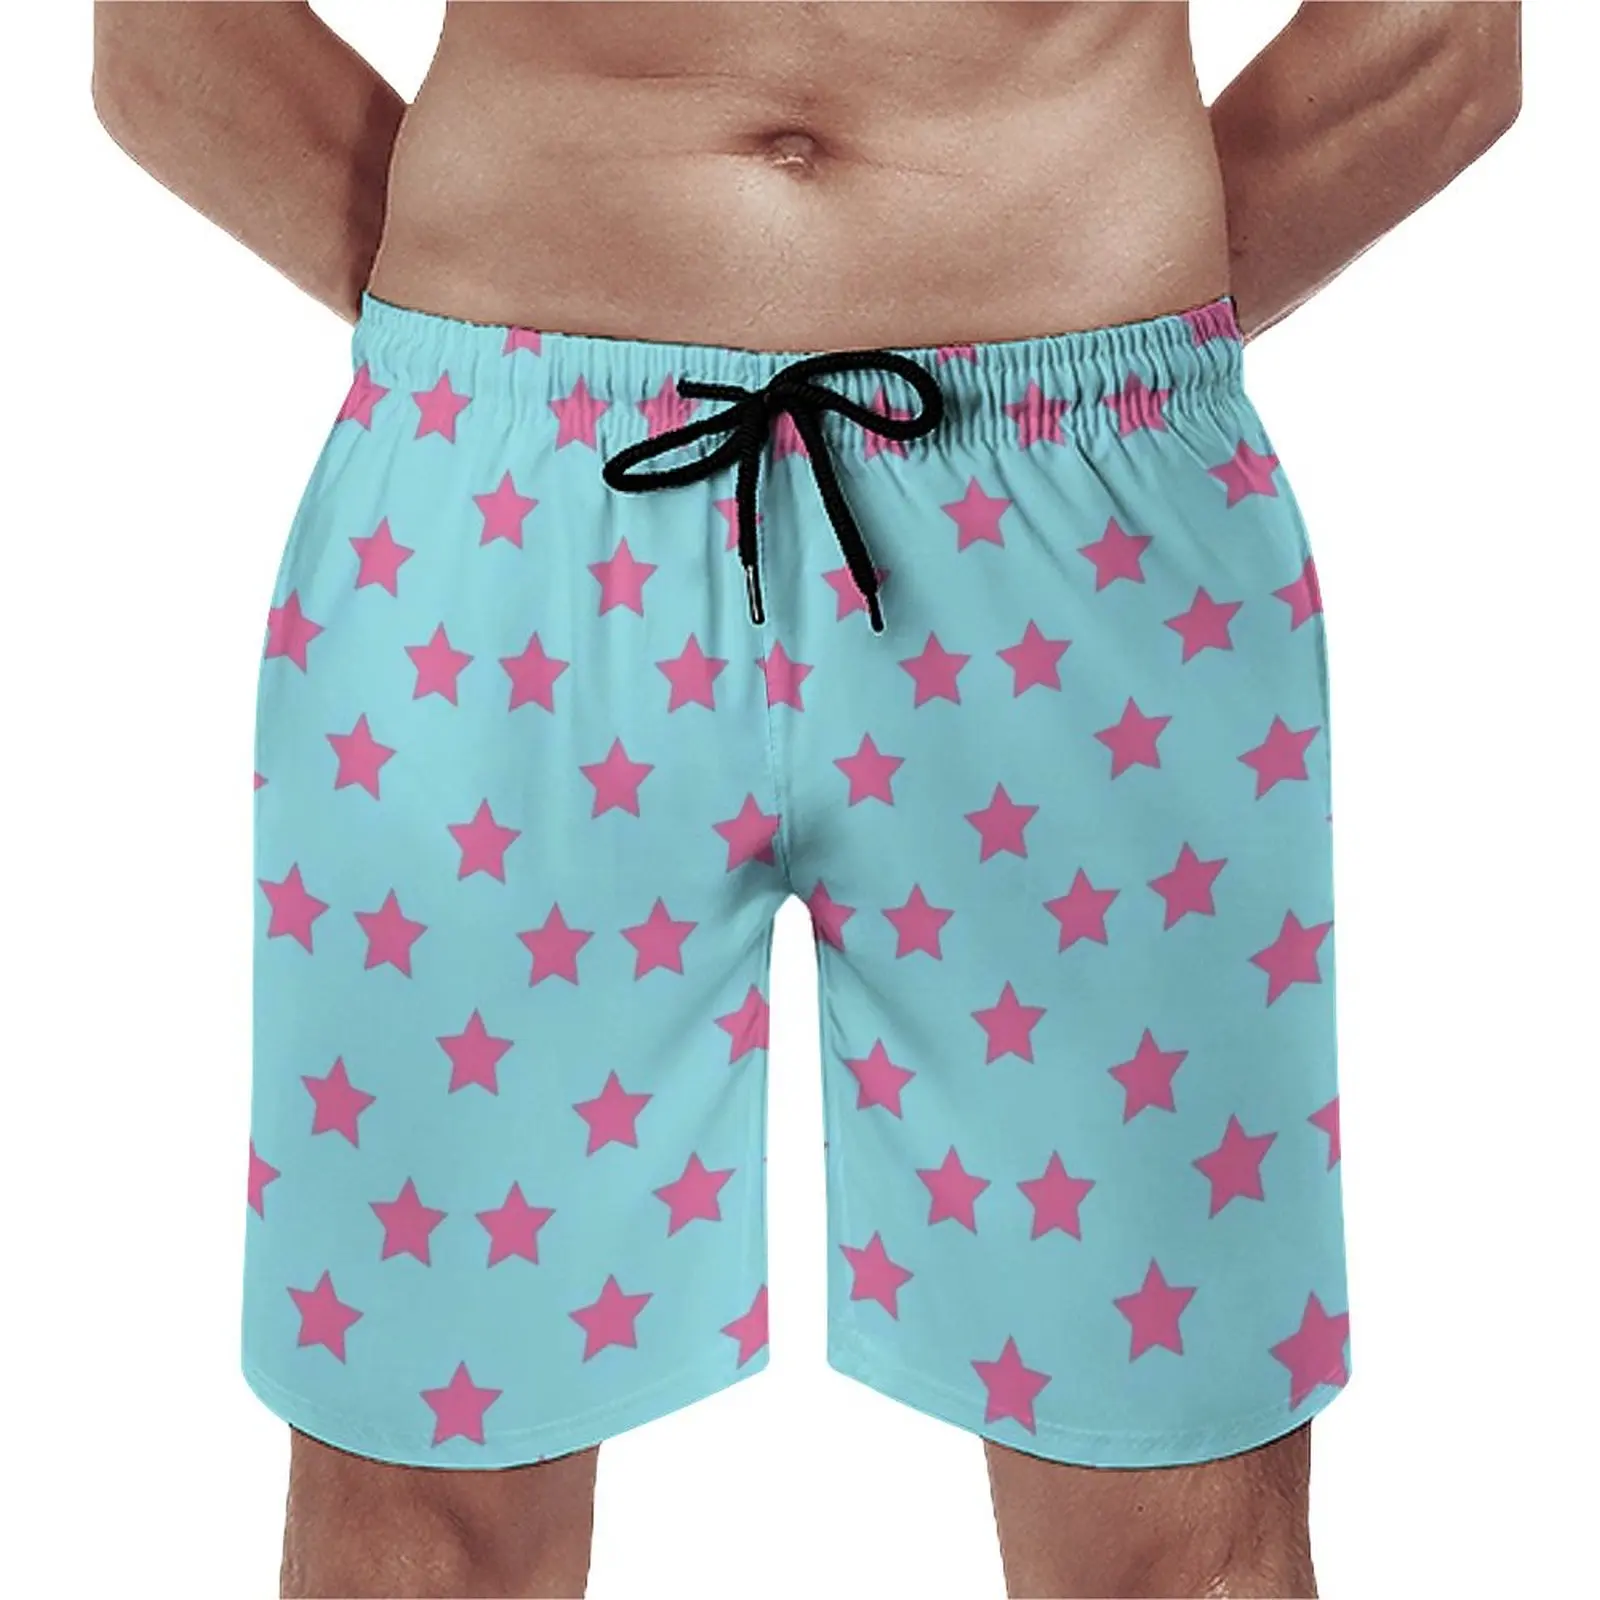 

Шорты Joestar пляжные быстросохнущие для мужчин, повседневные короткие штаны для бега и пляжа, приключения Джоджо, розовые звезды, летние